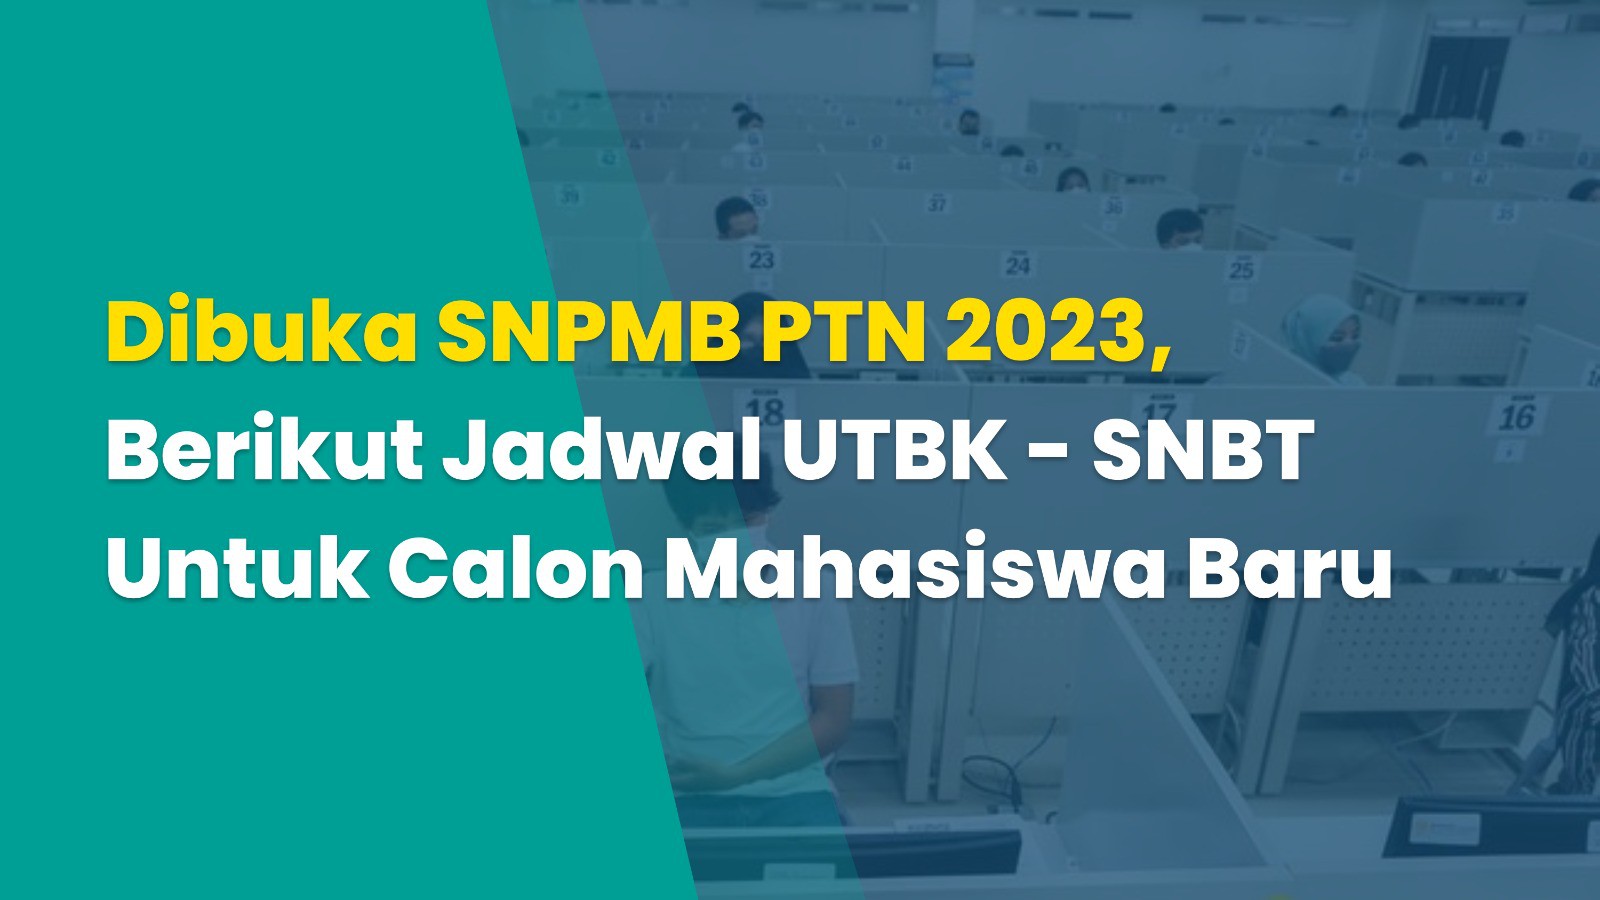 Dibuka SNPMB PTN 2023, Berikut Jadwal UTBK - SNBT Untuk Calon Mahasiswa Baru